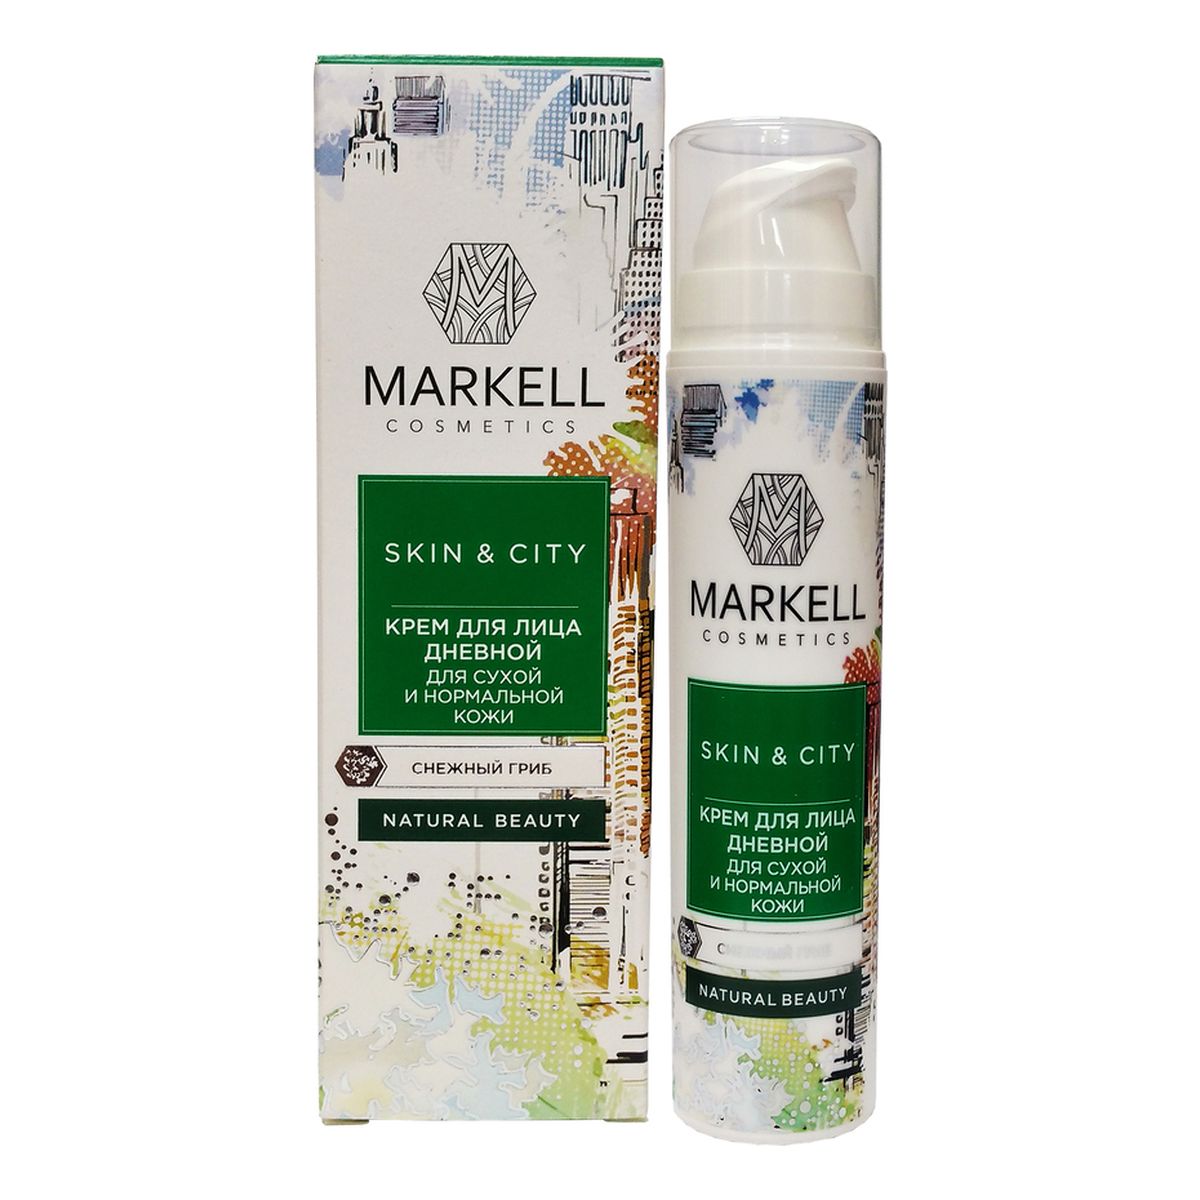 Markell Cosmetics Skin & City KREM DO TWARZY NA DZIEŃ CERA SUCHA I NORMALNA 50ml